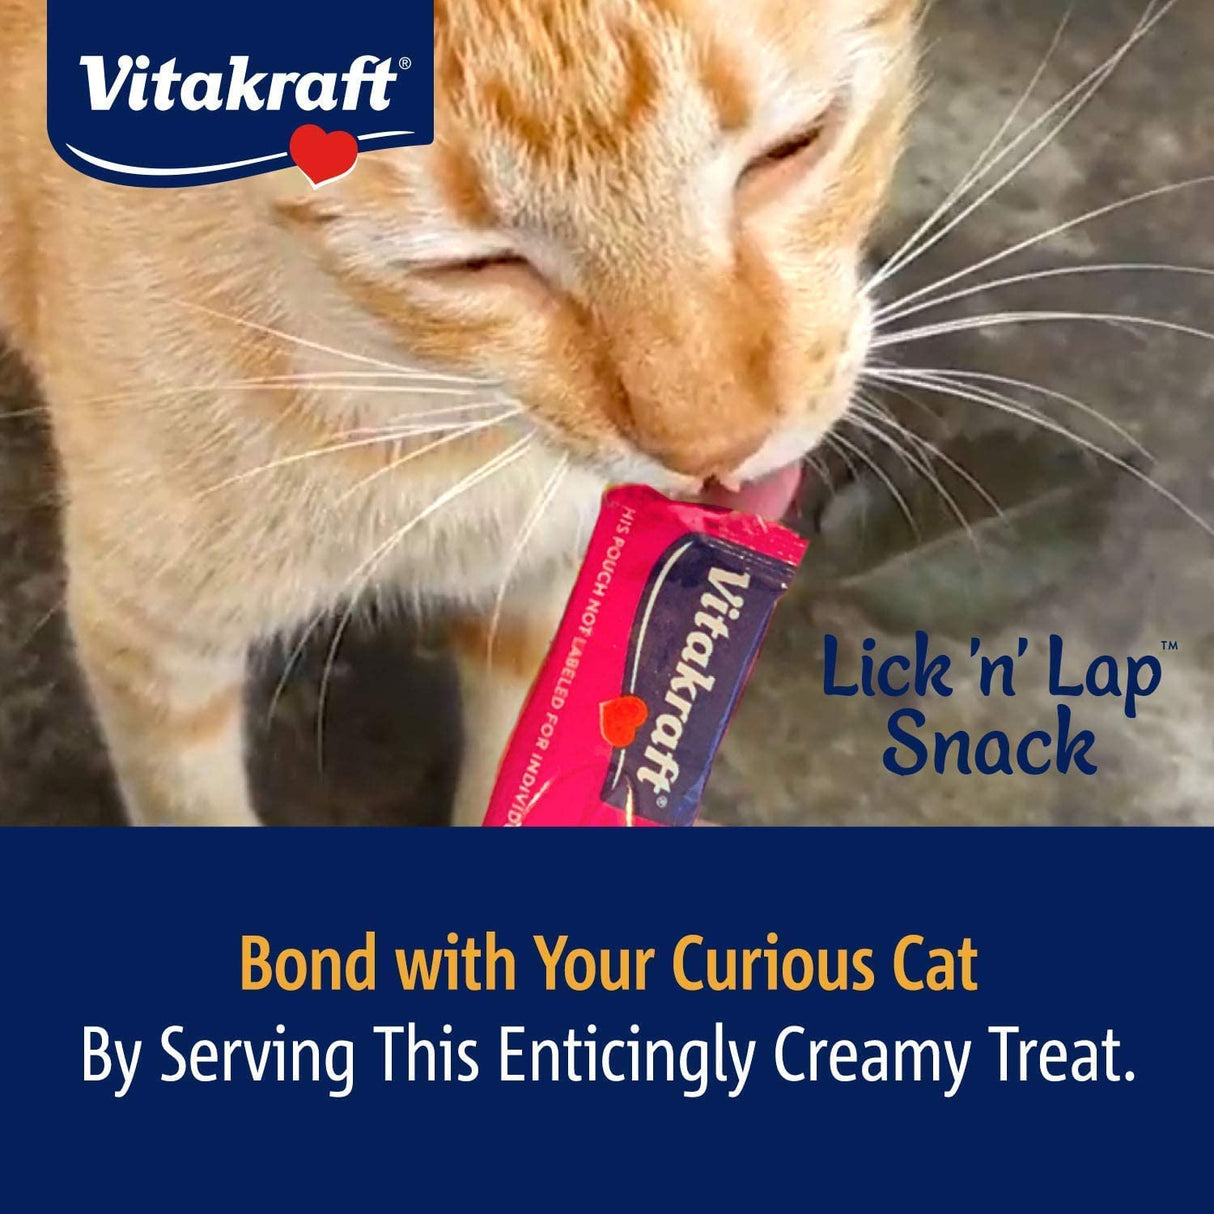 Vitakraft Lick N Lap Snack Salmon Cat Treat - PetMountain.com